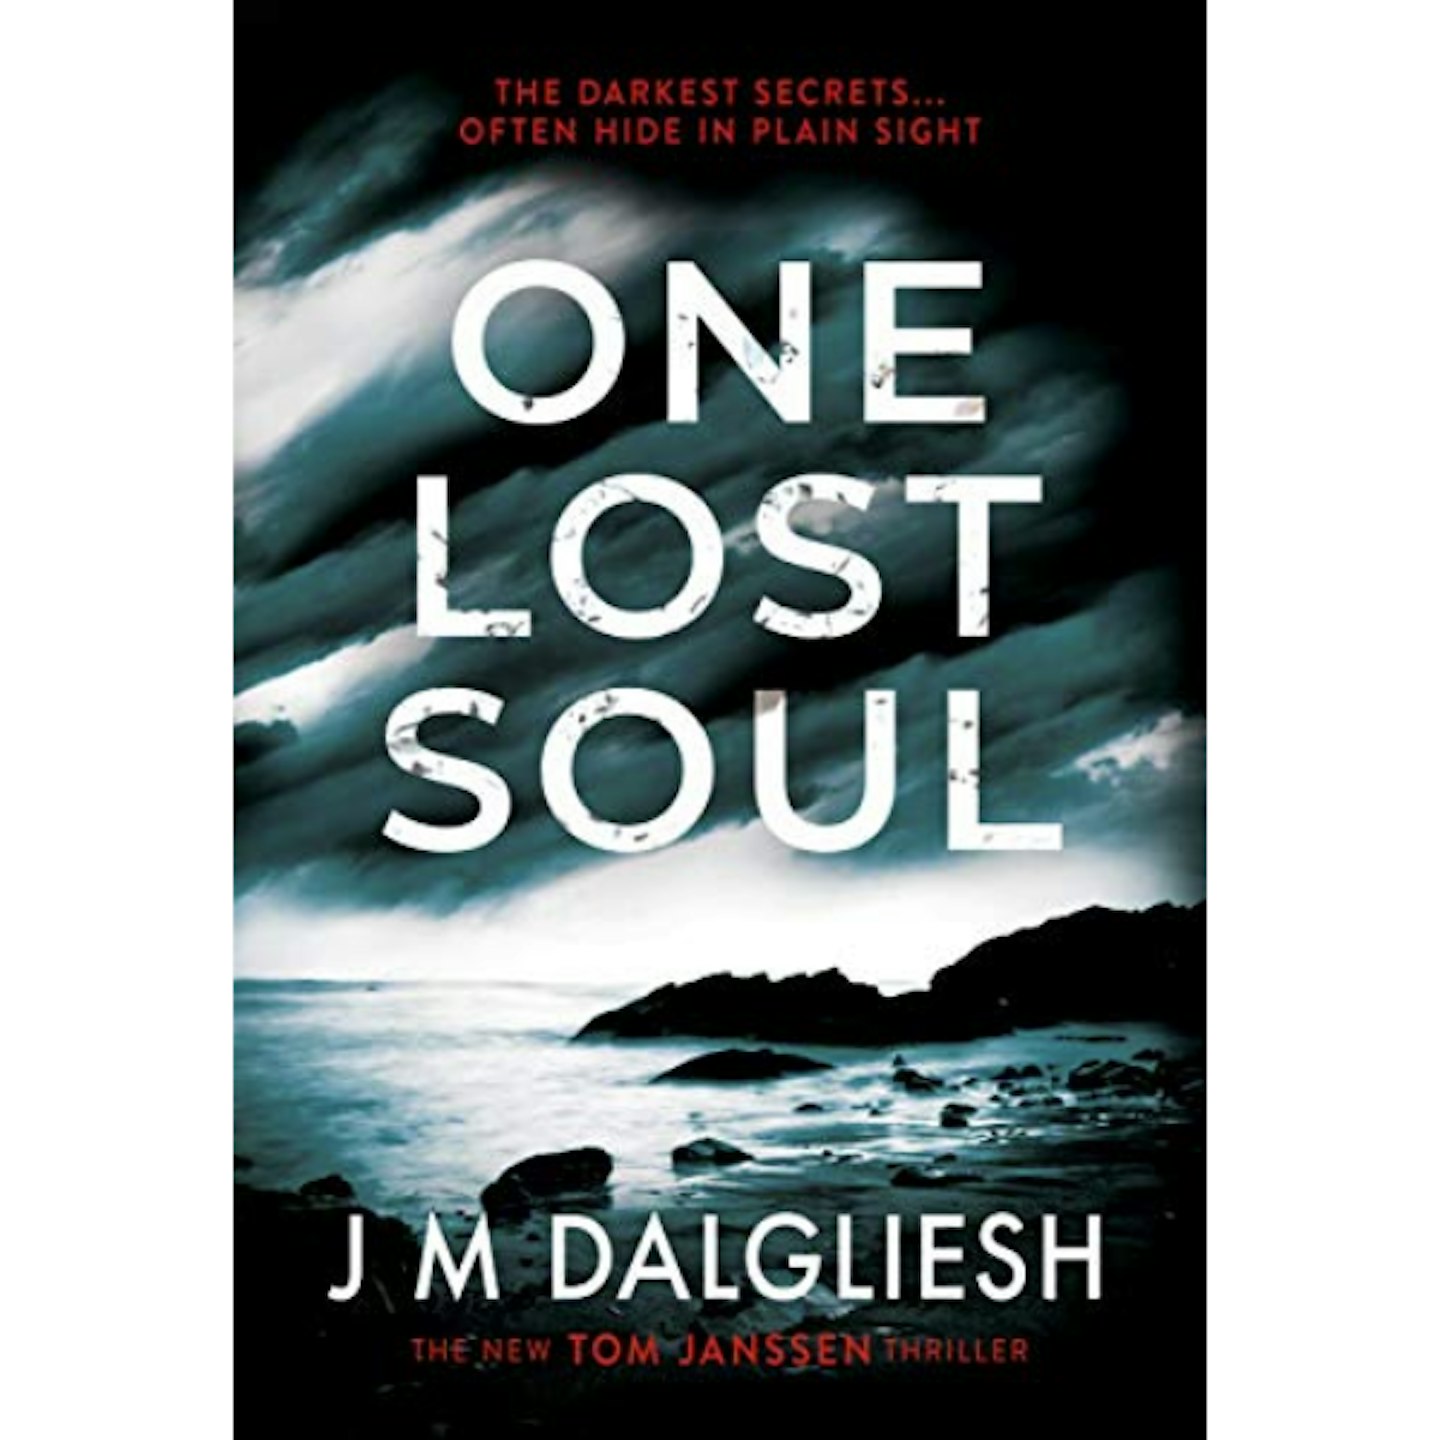 One Lost Soul by JM Dalgliesh